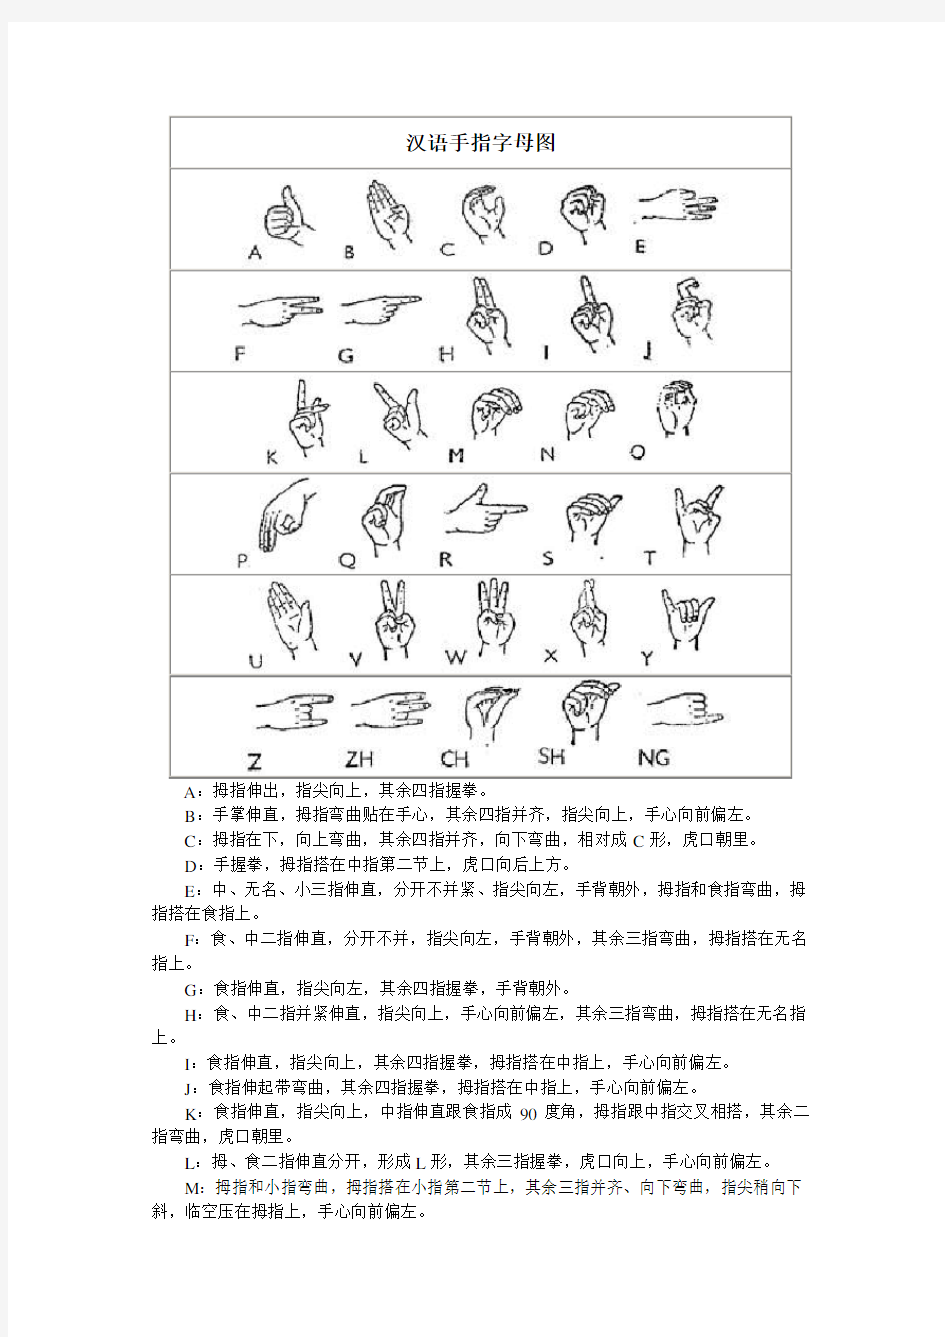 汉语手指字母图资料